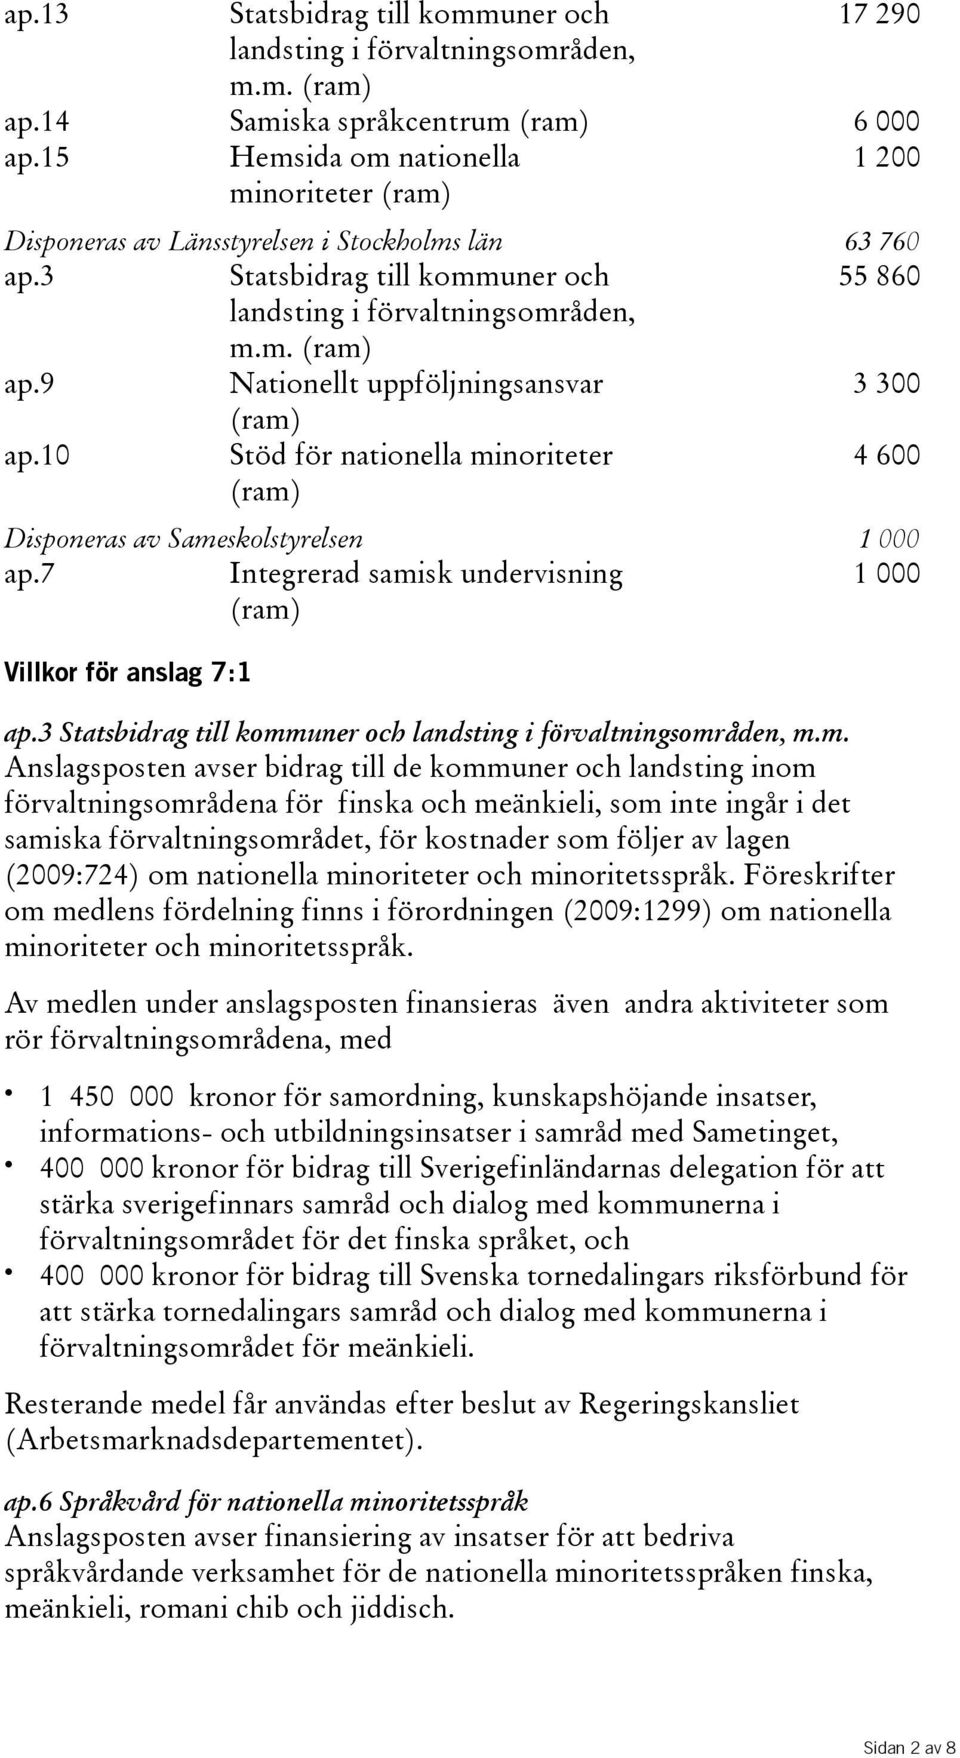 10 Stöd för nationella minoriteter 4600 Disponeras av Sameskolstyrelsen 1 000 ap.7 Integrerad samisk undervisning 1000 Villkor för anslag 7:1 ap.